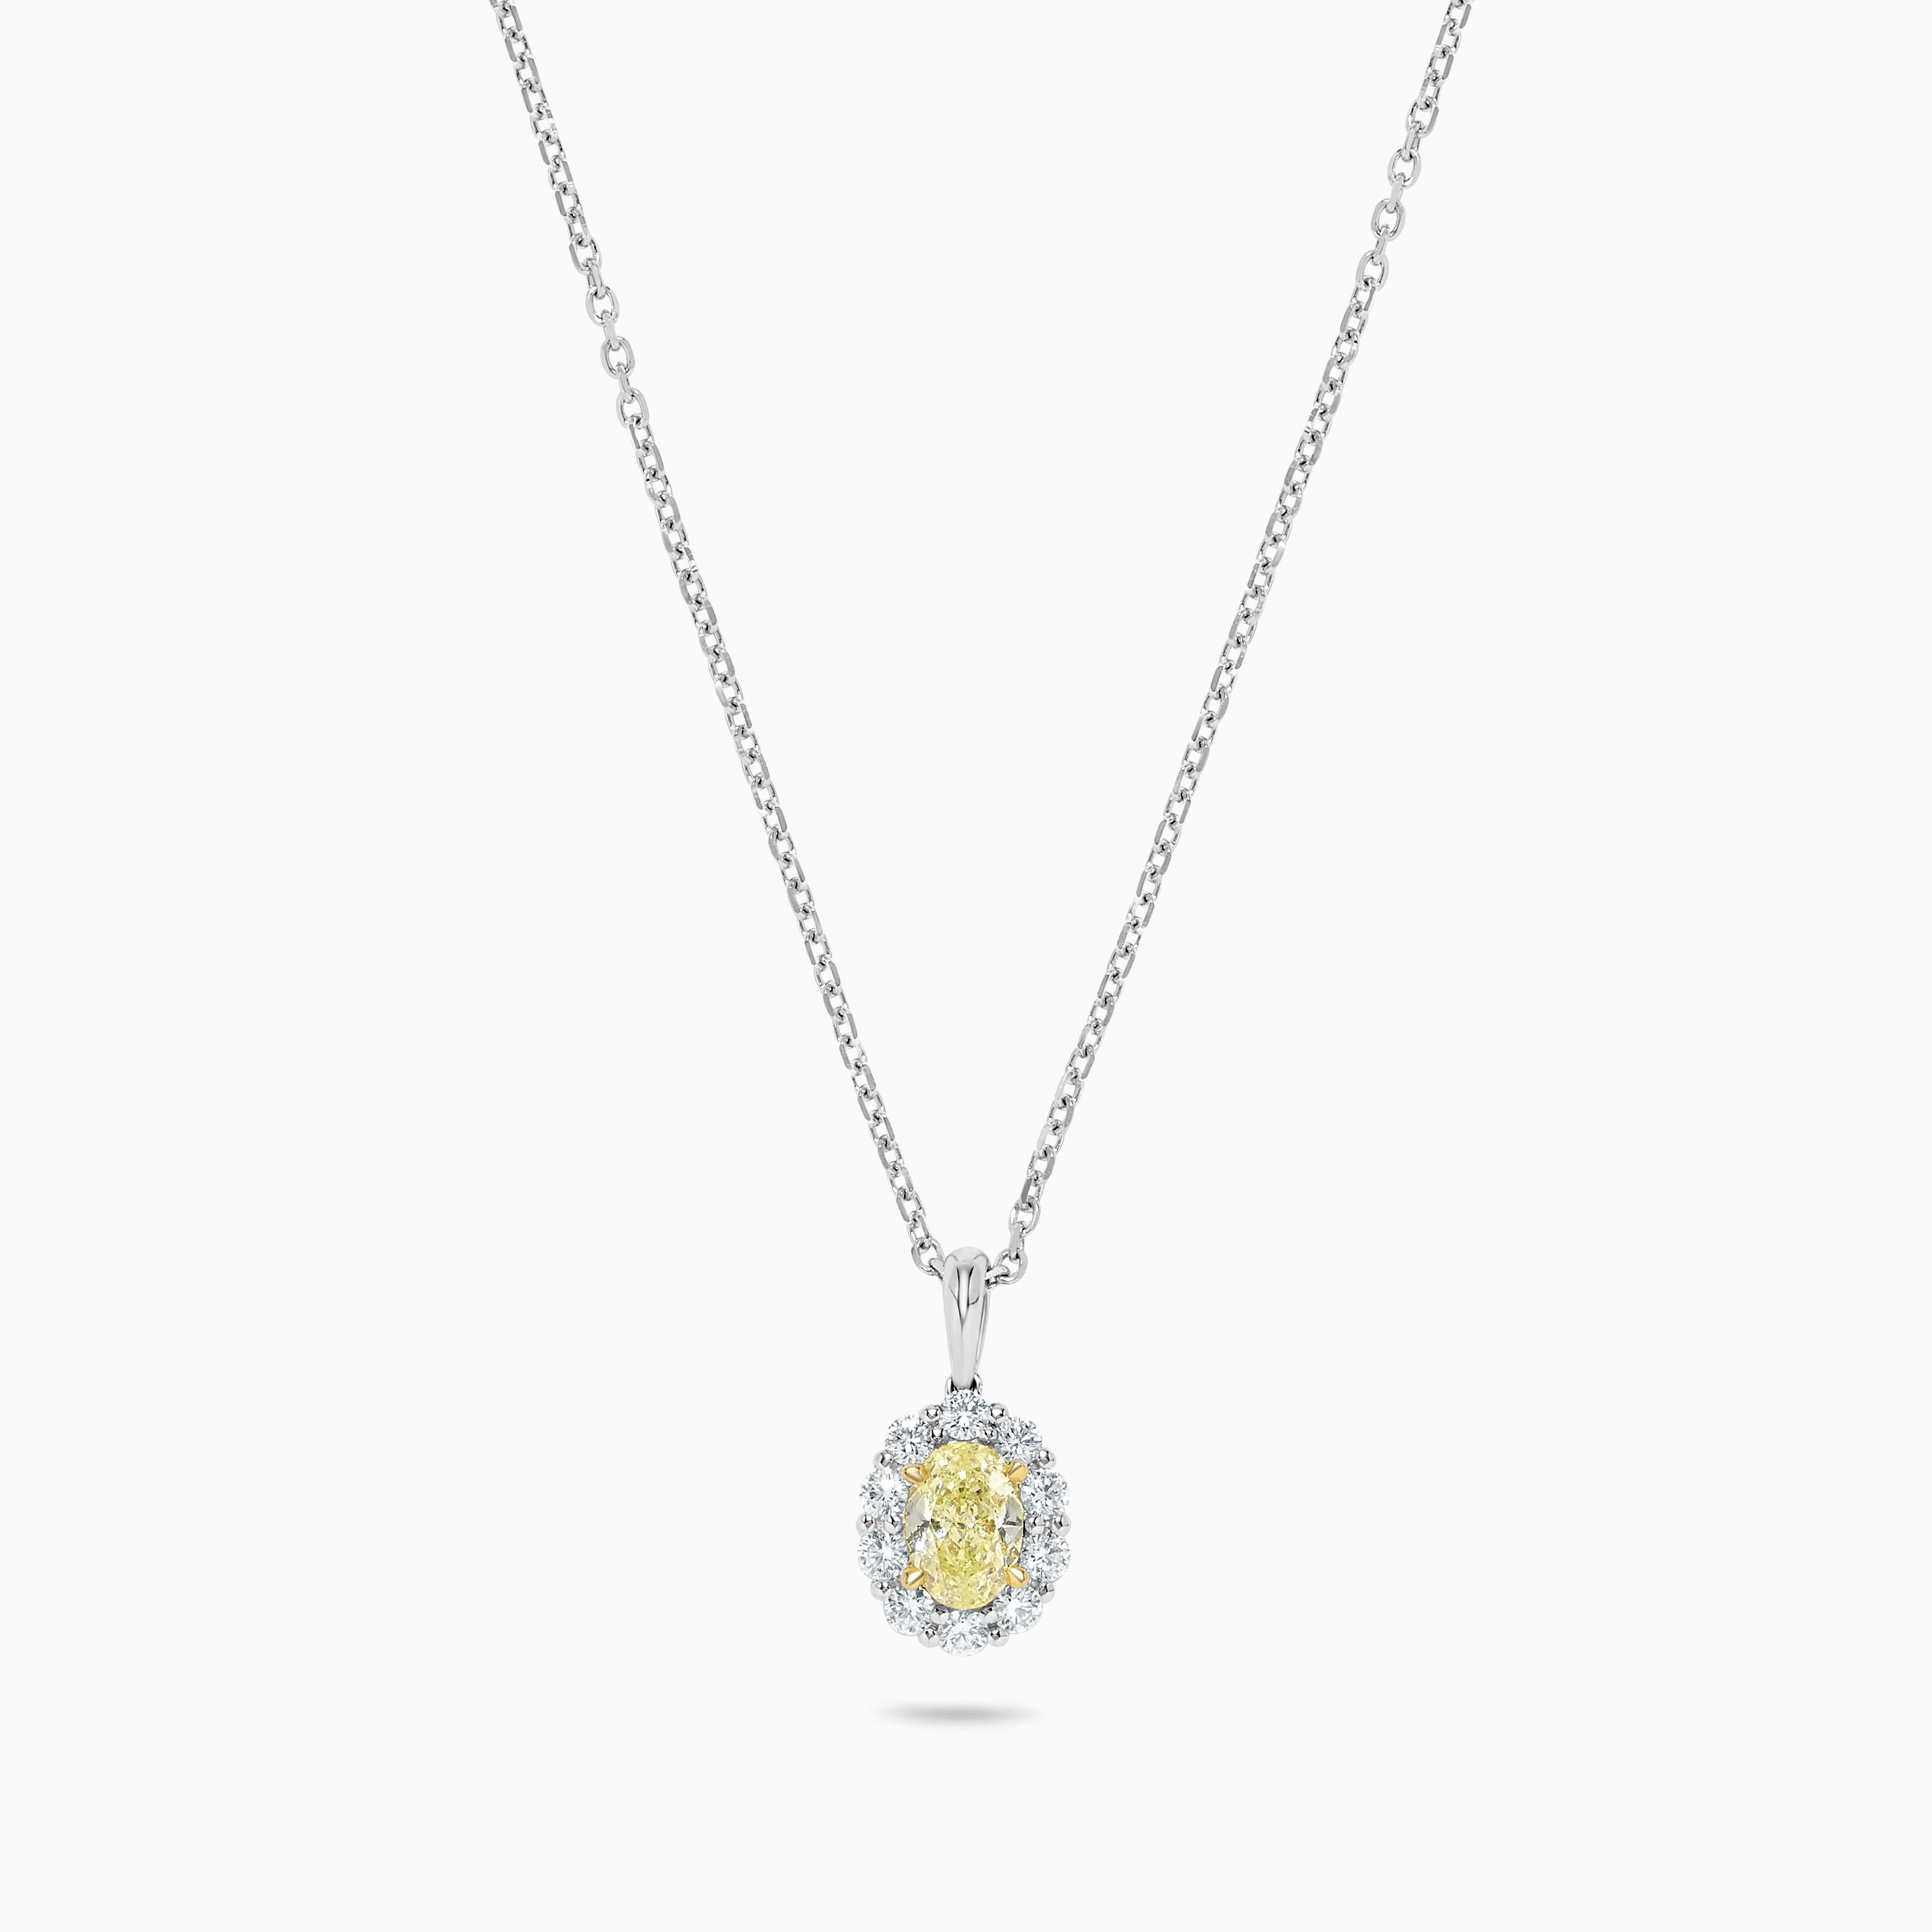 Le pendentif classique en diamant de Raregemworld. Monté dans une belle monture en or jaune et blanc 18 carats avec un diamant jaune naturel de taille ovale. Le diamant jaune est entouré d'une mêlée de diamants blancs ronds naturels. Ce pendentif